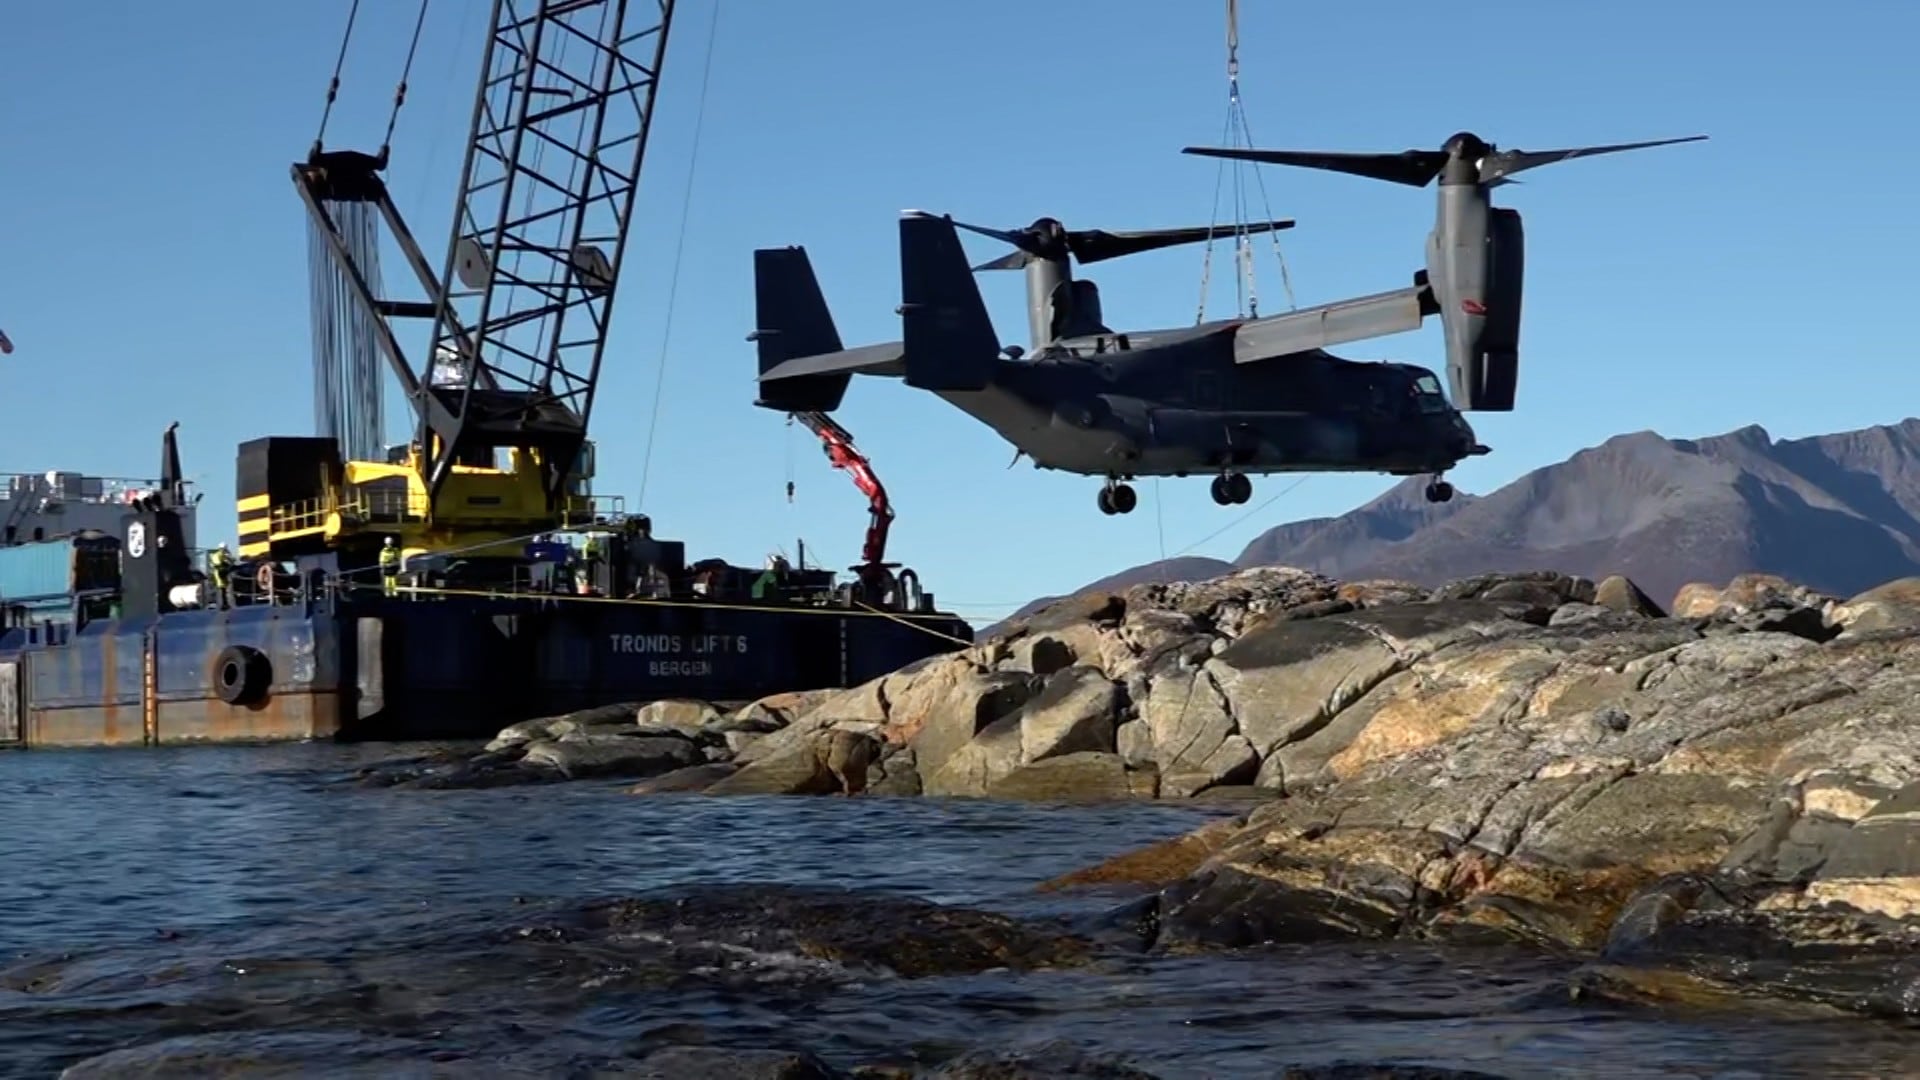 Her berges det amerikanske helikopterflyet som har vært strandet i seks uker: – Krevende - NRK